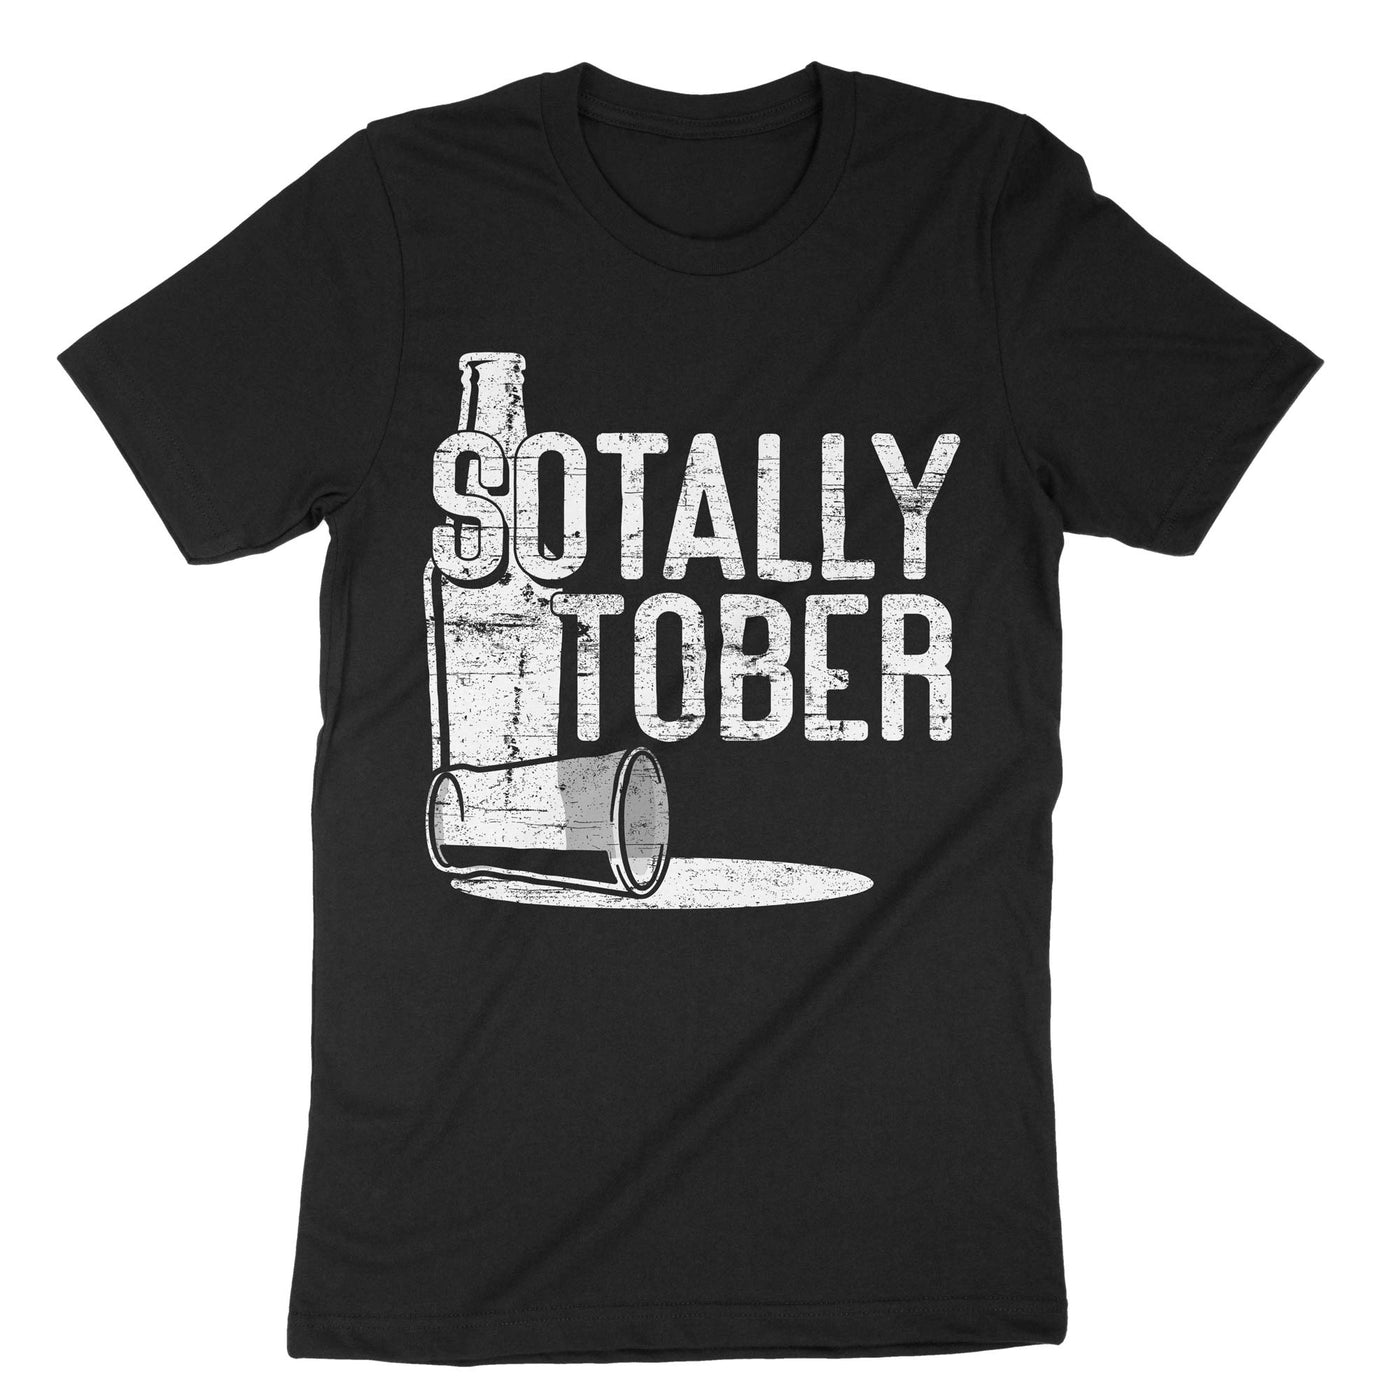 Black Sotally Tober T-Shirt#color_black